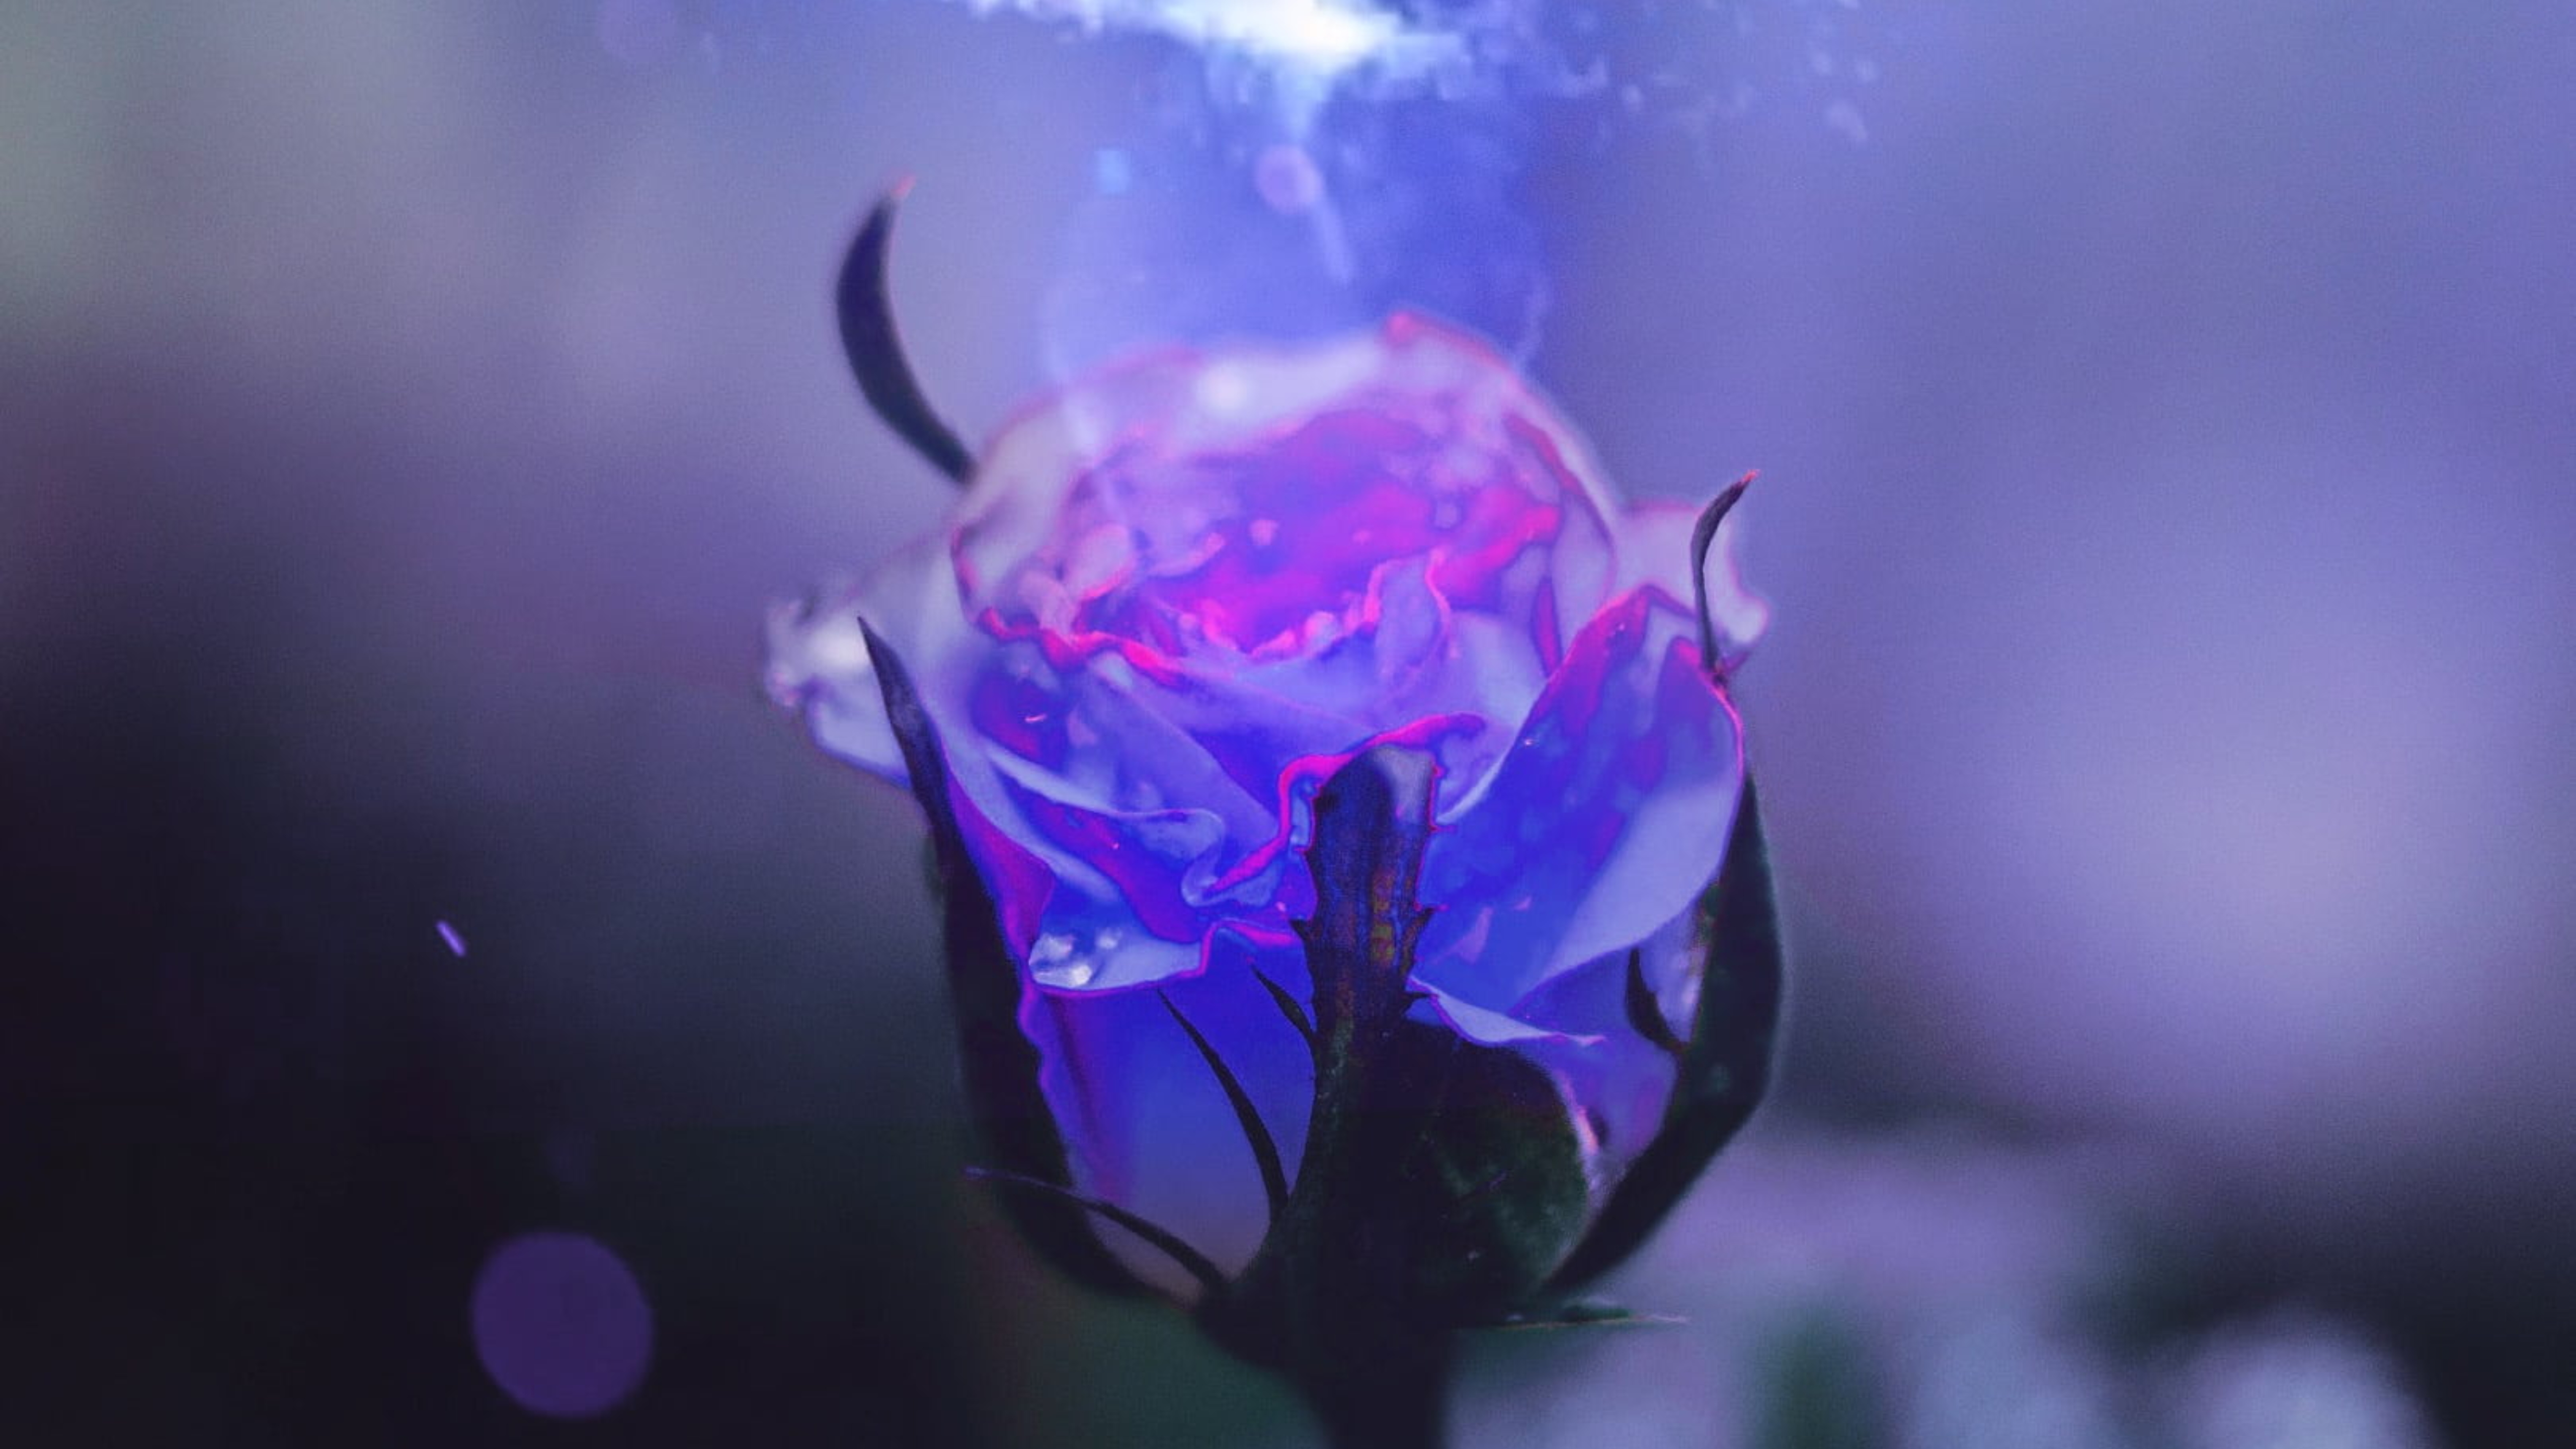 Tải ảnh hoa hồng xanh là một trong những cách tuyệt vời để thể hiện tình yêu với loài hoa này. Dù đang tìm kiếm một hình nền đẹp cho máy tính, hay muốn chia sẻ hình ảnh độc đáo trên mạng xã hội - tải ảnh hoa hồng xanh luôn là lựa chọn tuyệt vời để tạo vẻ đẹp cho ngày mới!